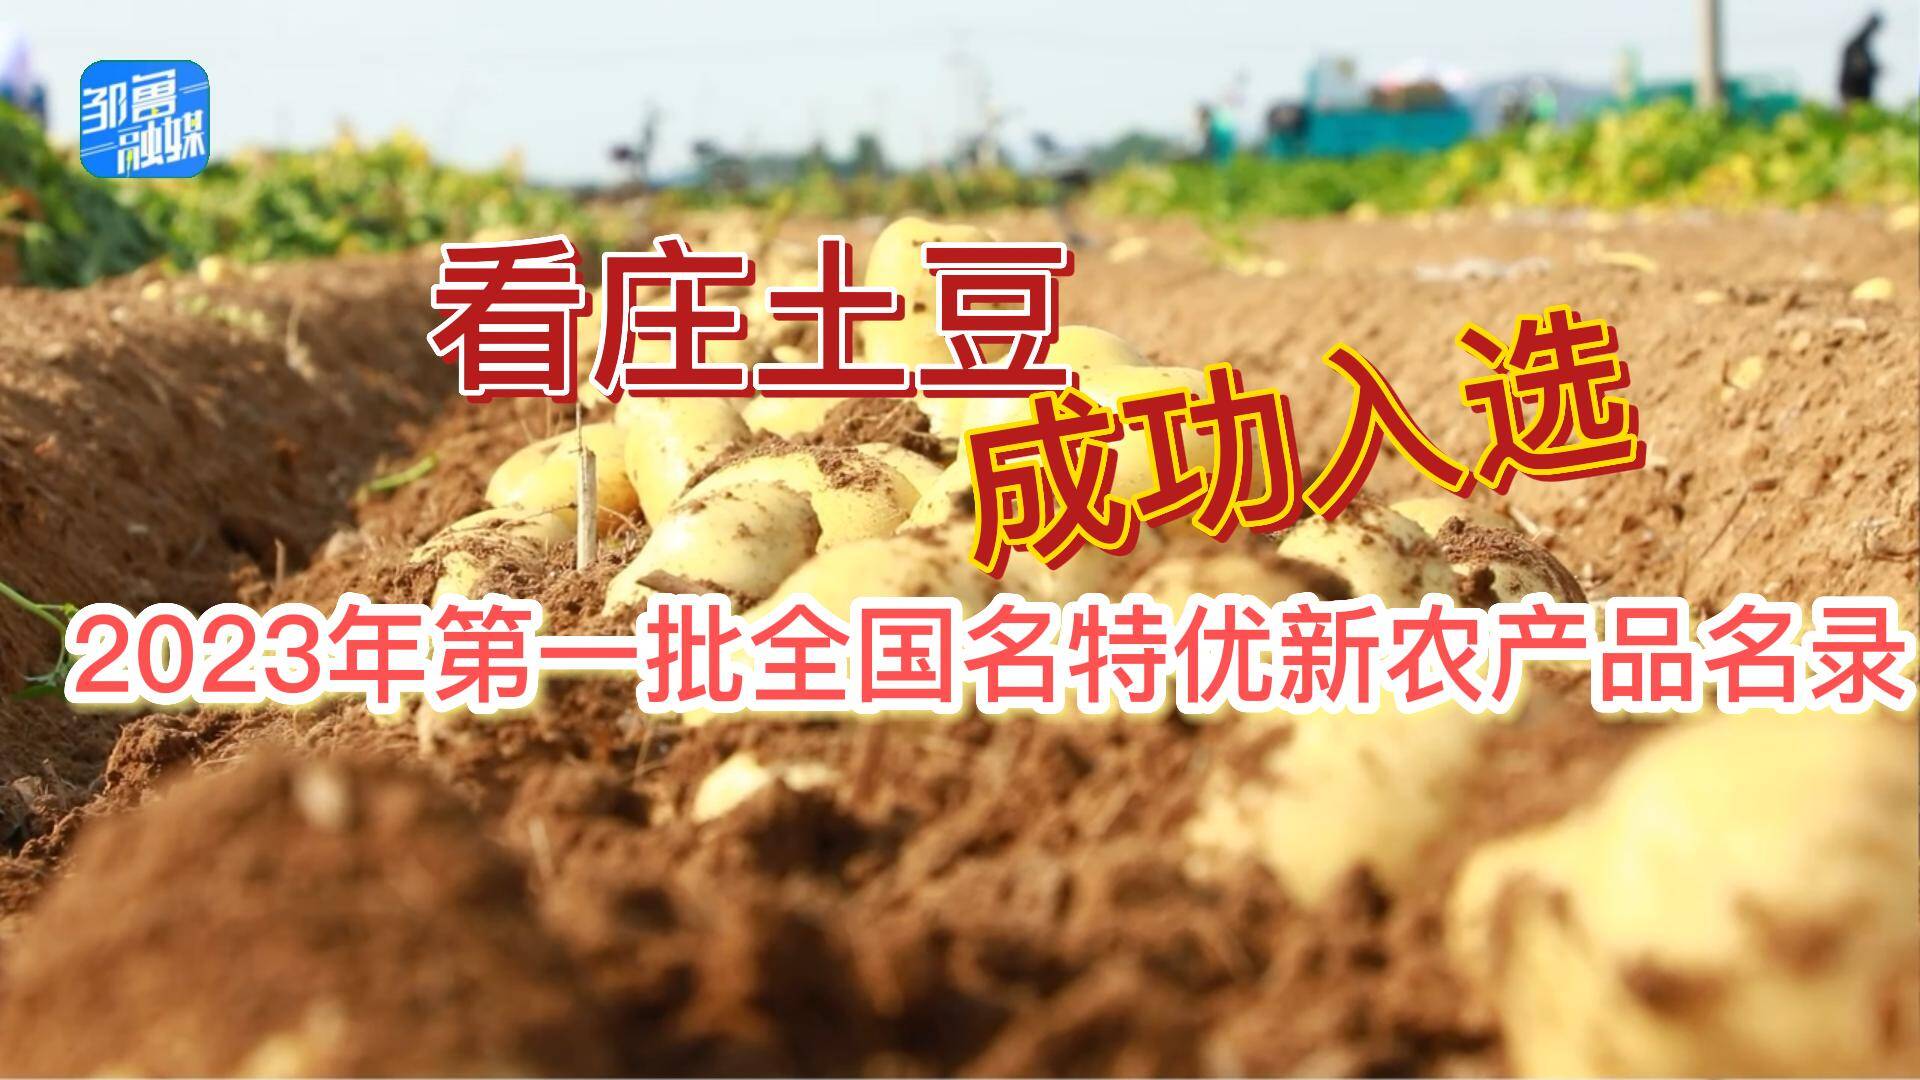 【邹视频·新闻】46 秒|看庄土豆成功入选2023年第一批全国名特优新农产品名录